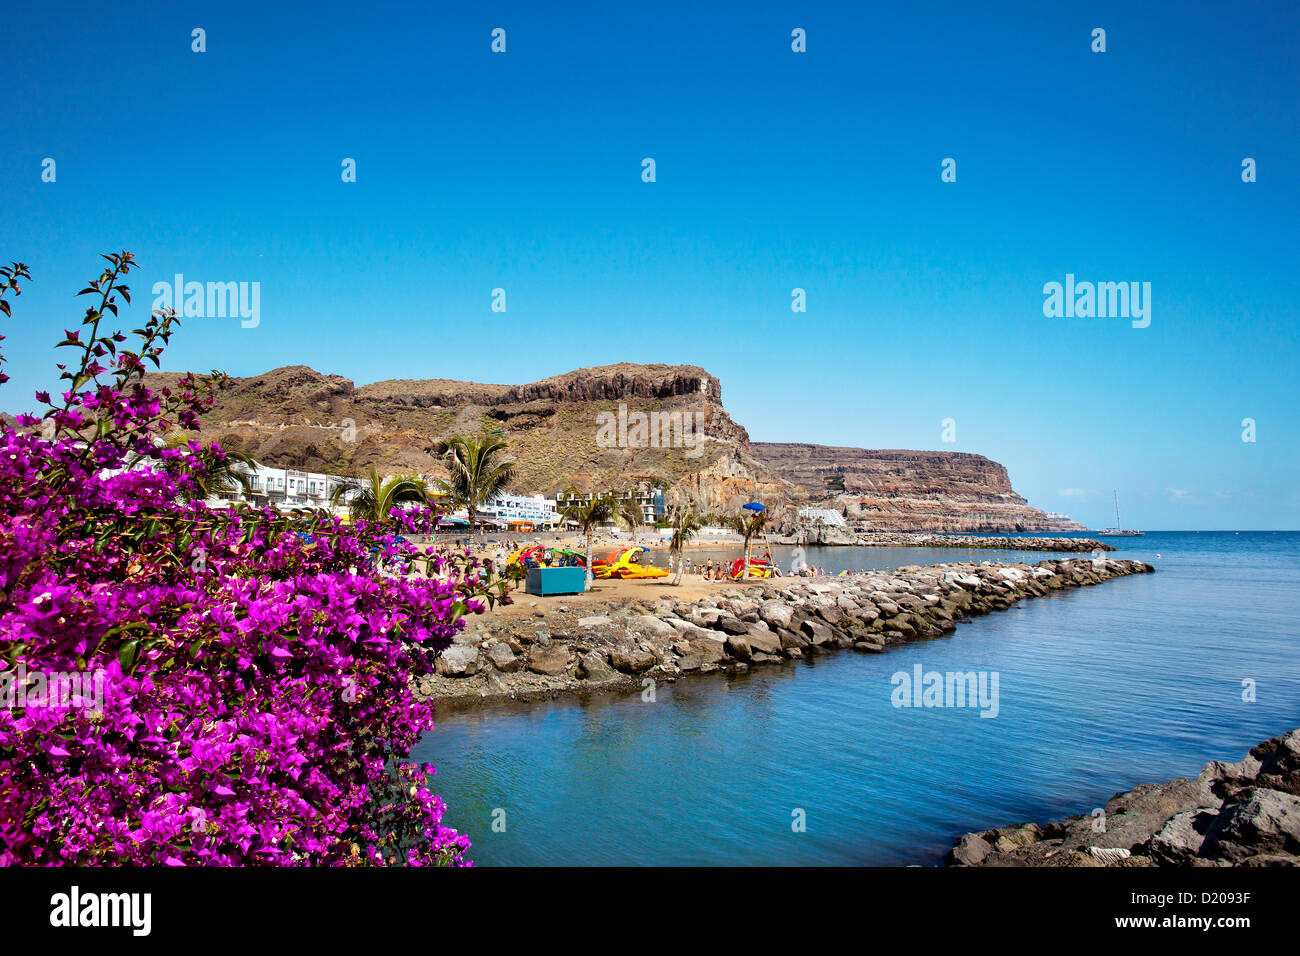 Flores en la costa bajo un cielo azul, Puerto de Mogán, Gran Canaria, Islas Canarias, España, Europa Foto de stock